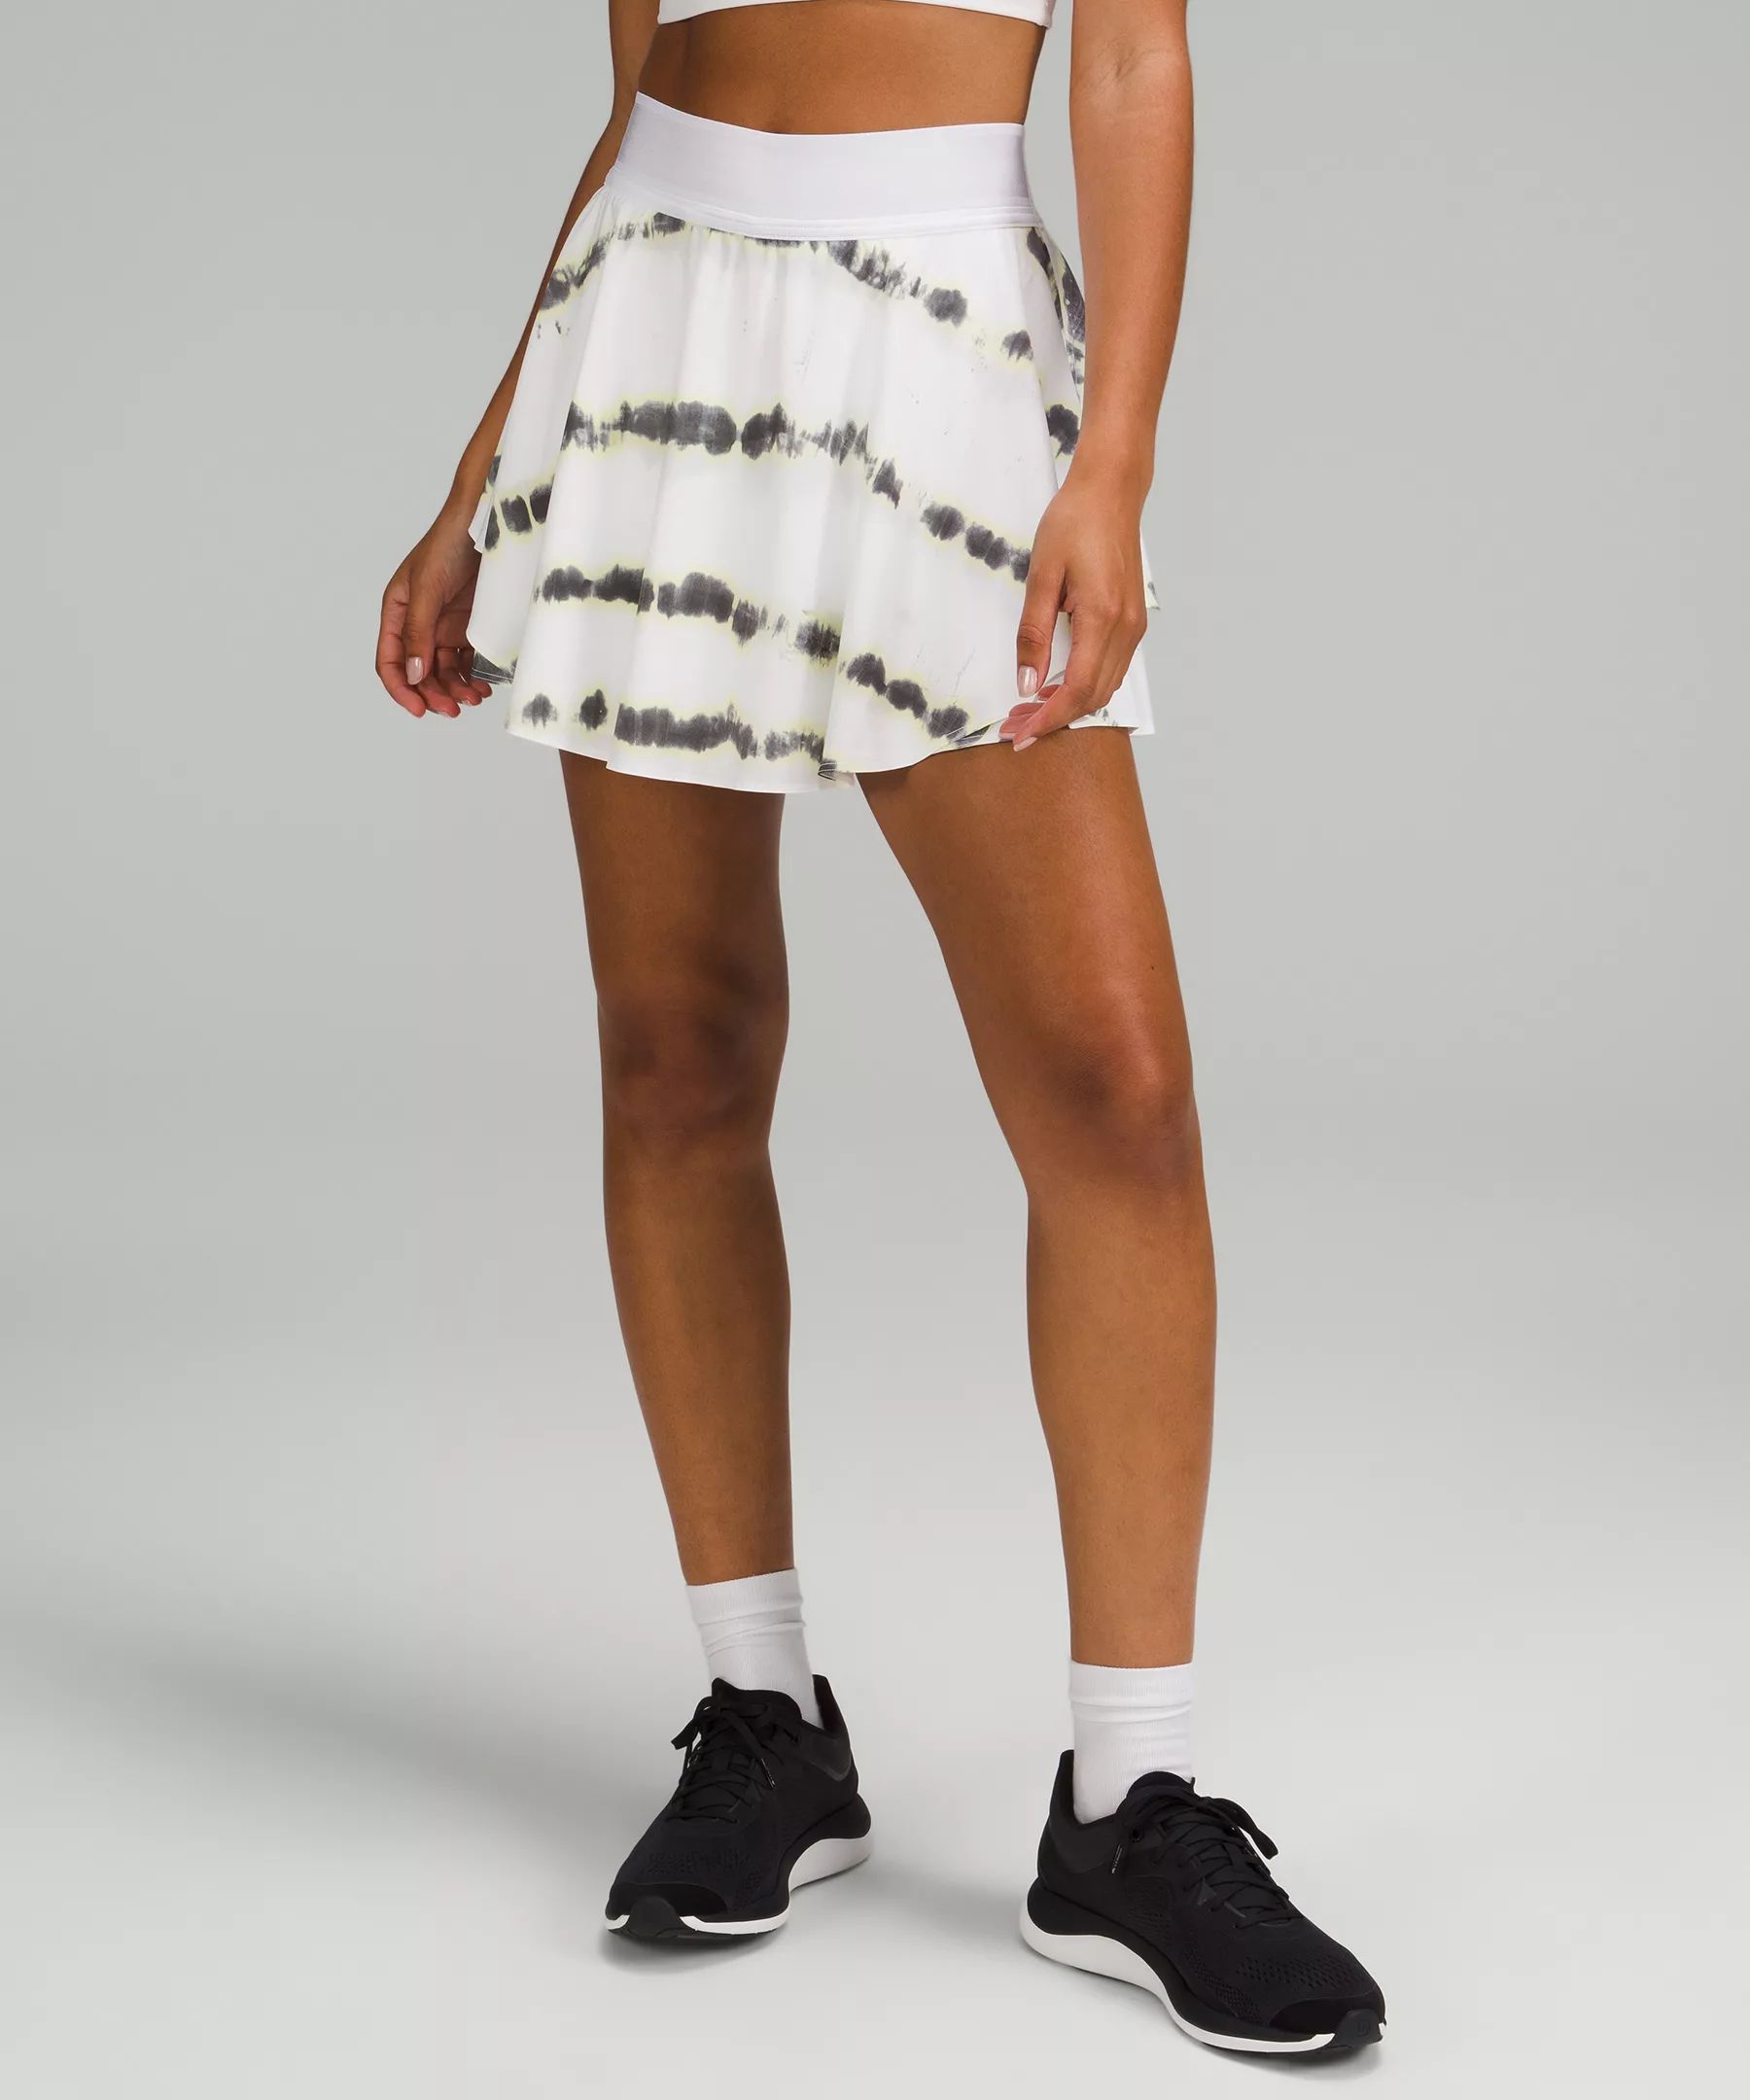 Court Rival High-Rise Skirt Long | Lululemon (US)